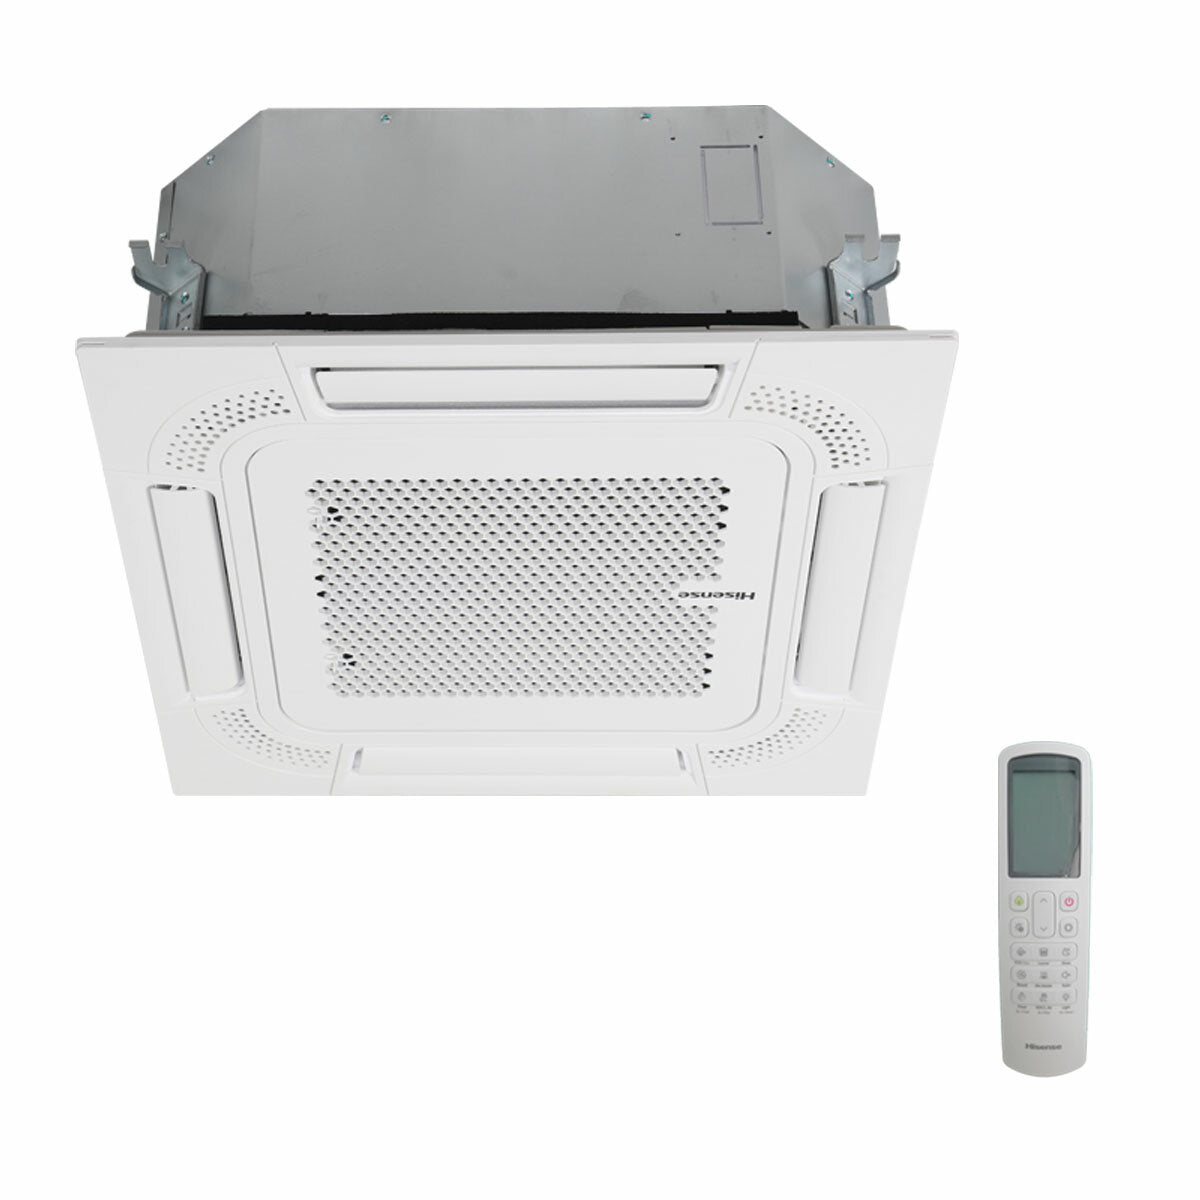 Hisense-Klimaanlage Cassette ACT Quadri Split 9000+9000+12000+18000 BTU Inverter A++ Außengerät 10 kW